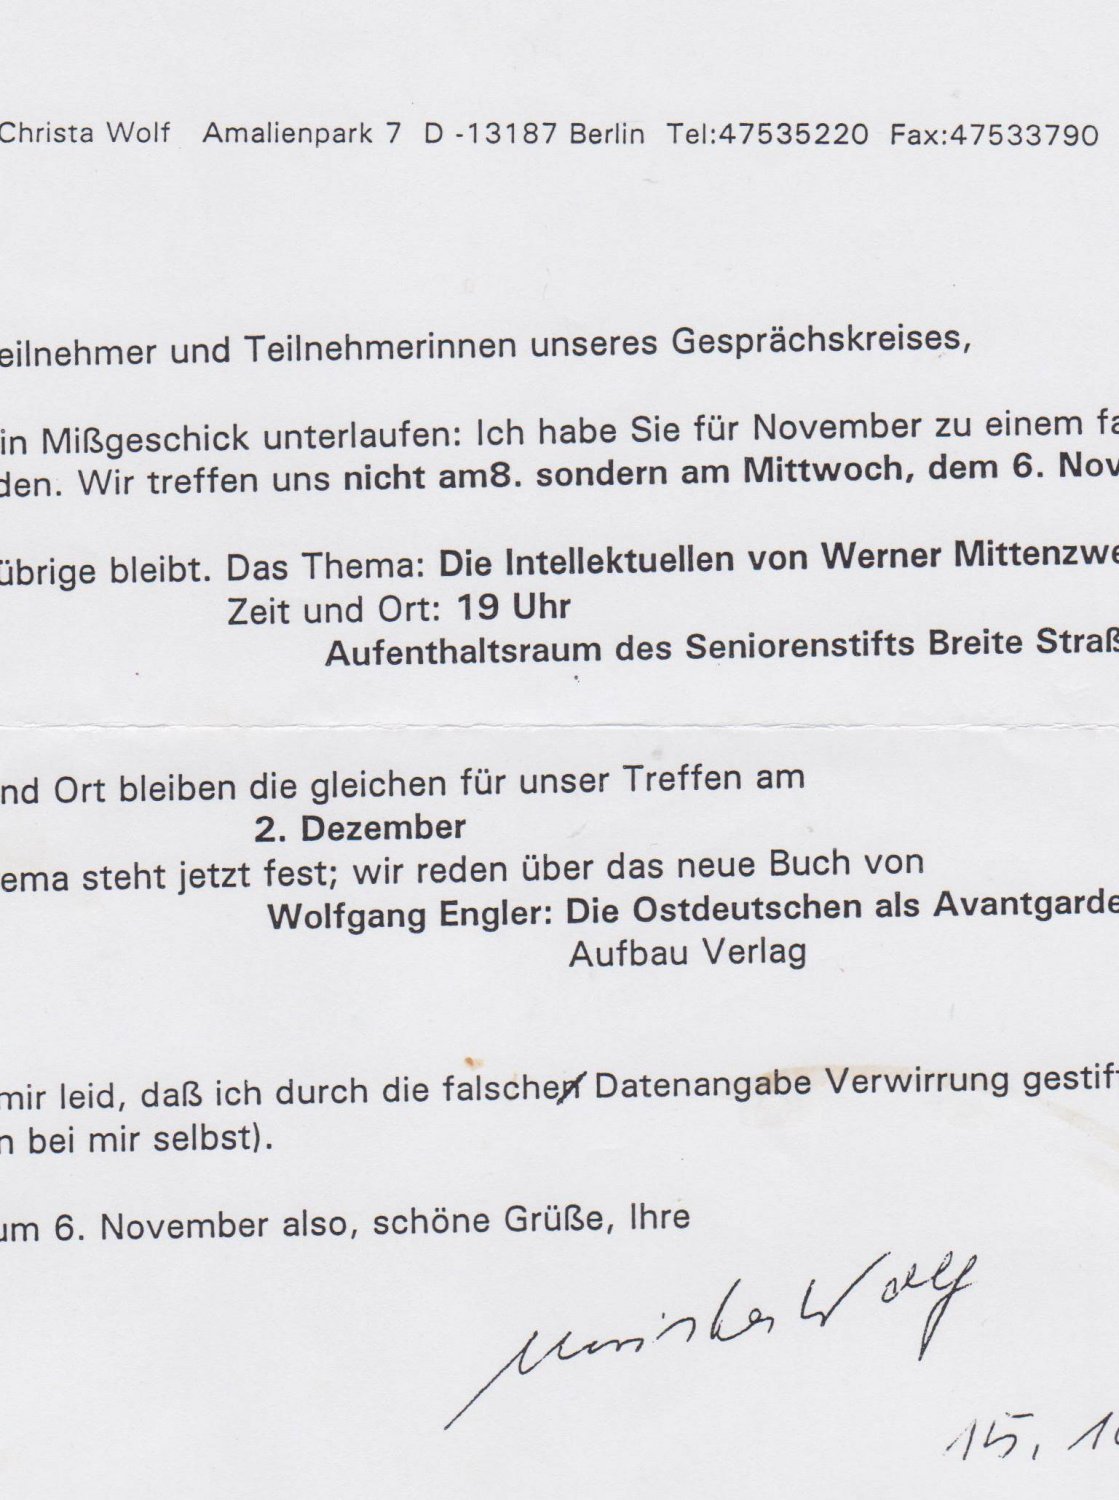 WOLF, Christa:   Informationsschreiben für die Teilnehmer eines Gesprächskreises. Maschinenschriftlicher Ausdruck mit handschriftlicher Signatur und Datierung (15.10.2002). 